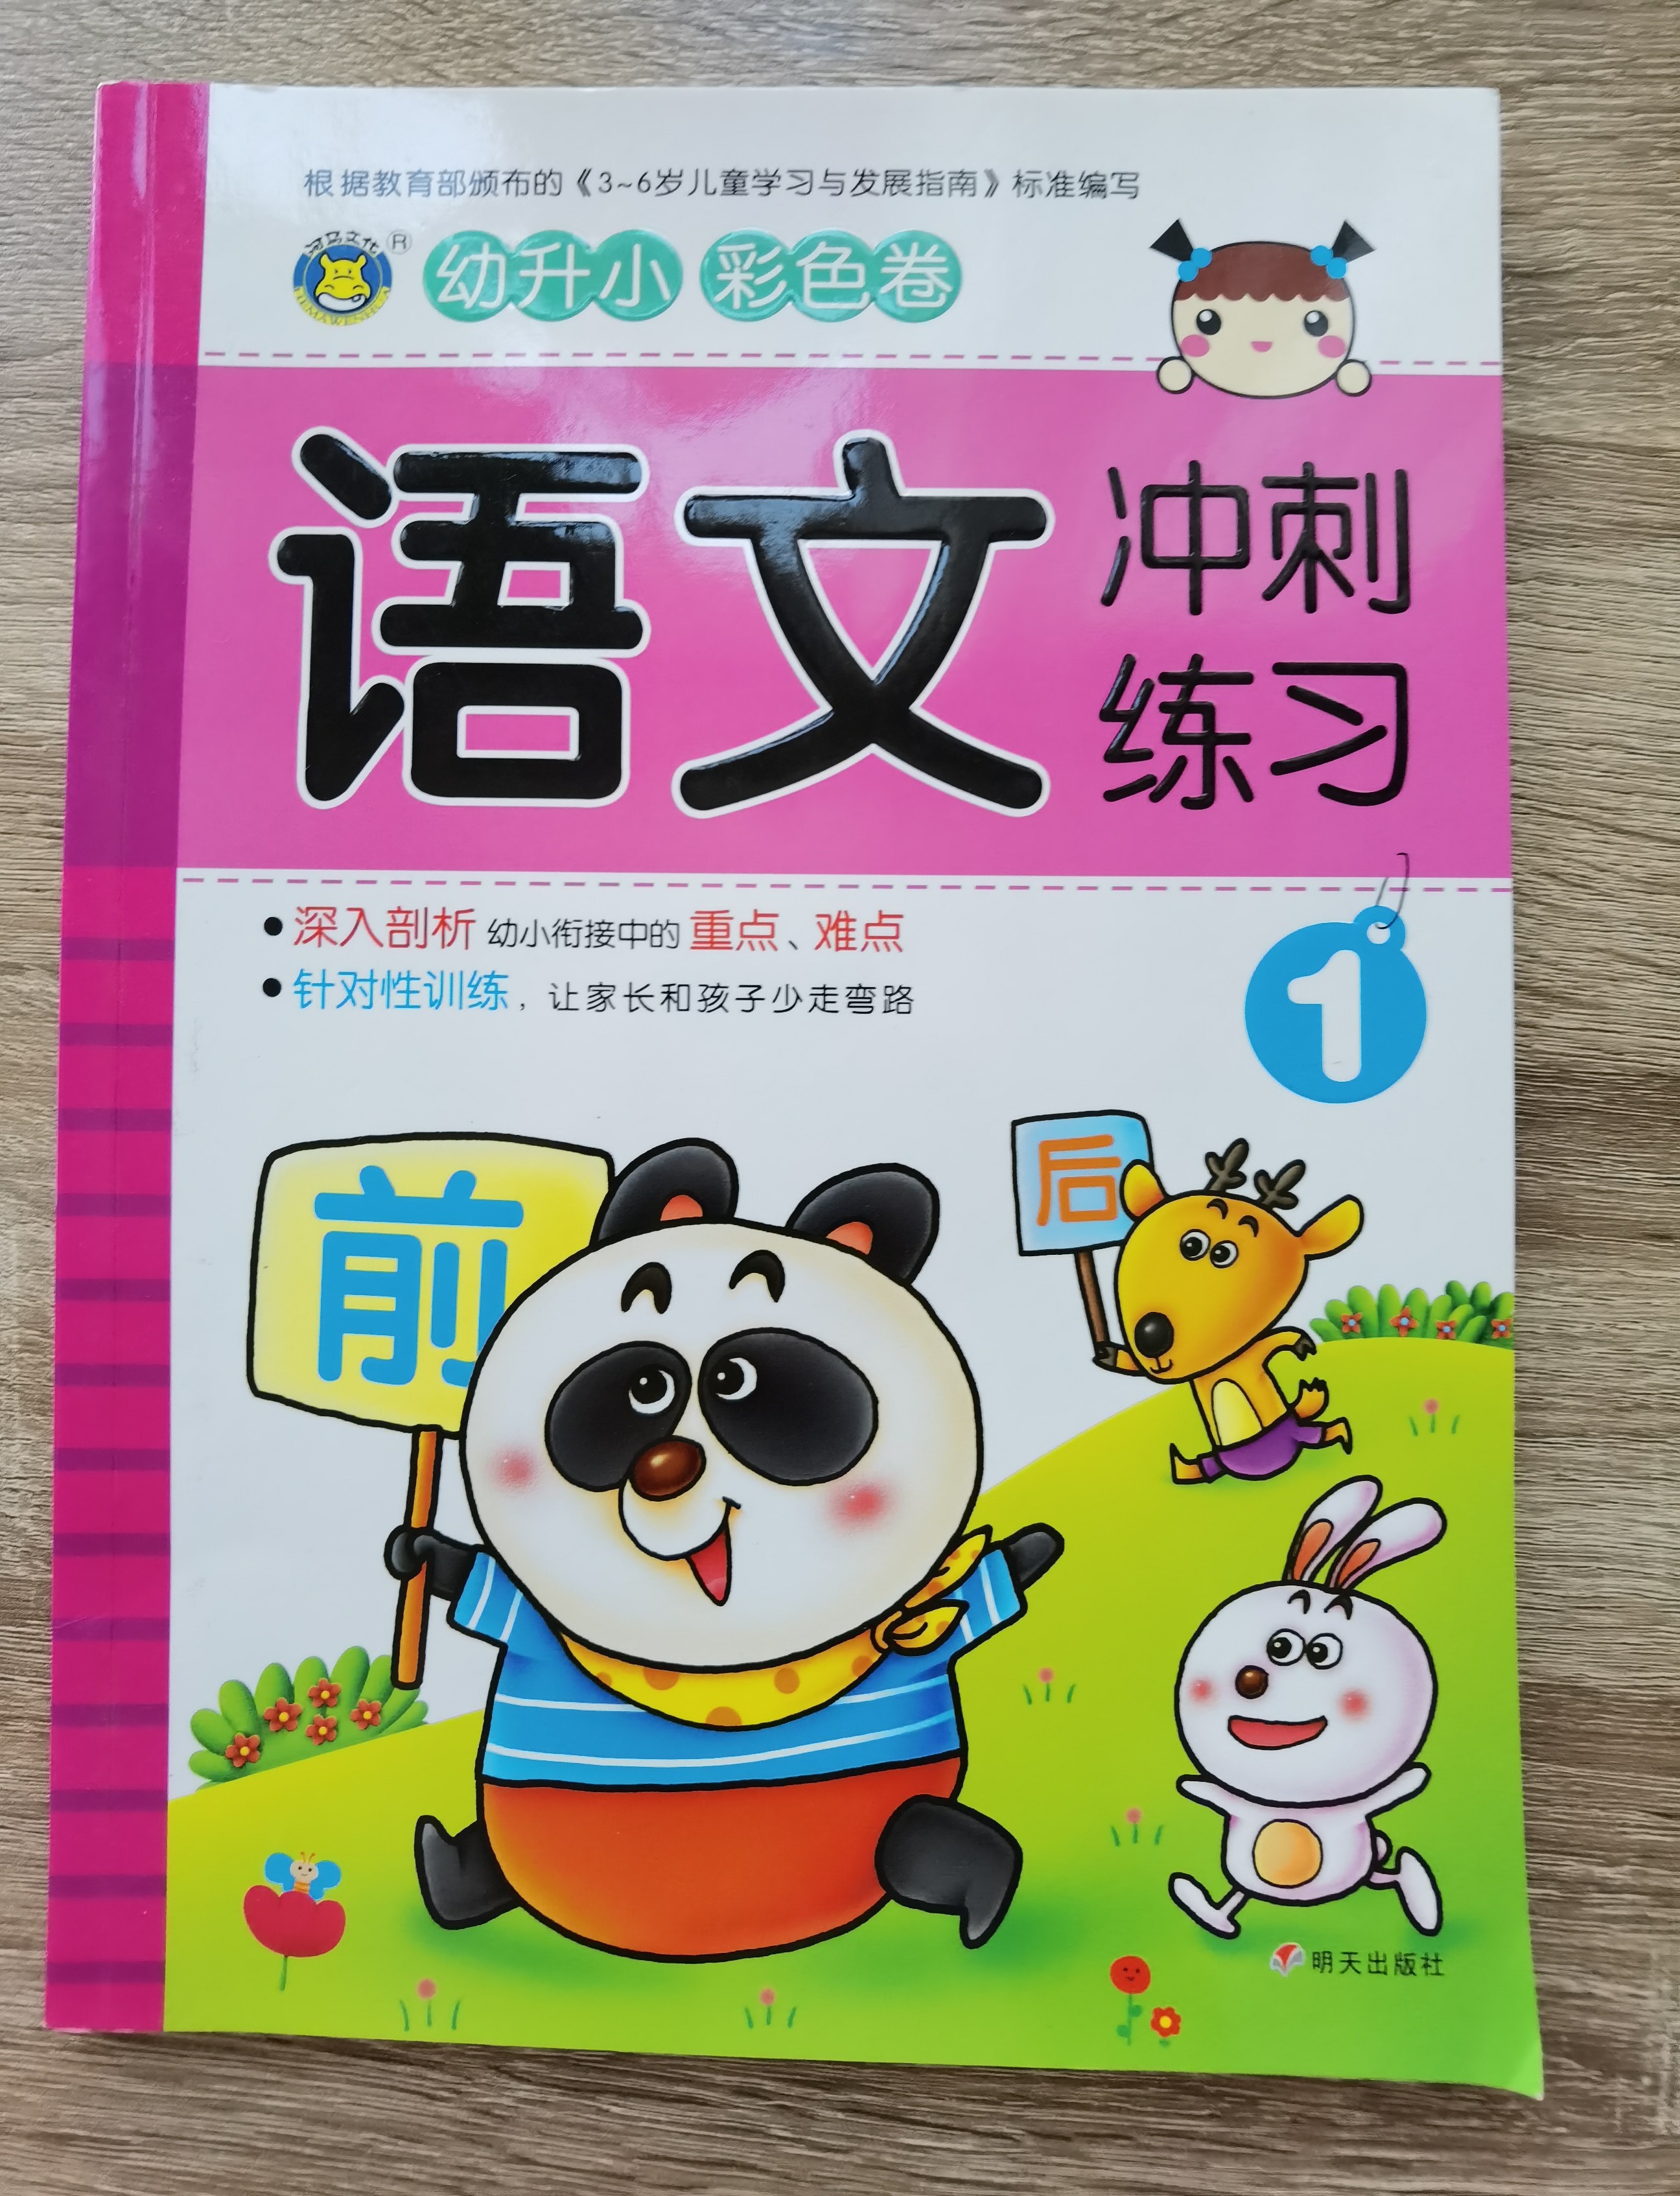 หนังสือภาษาจีน สำหรับเด็กอนุบาล 语文——冲刺练习 เล่มละ 130 บาท